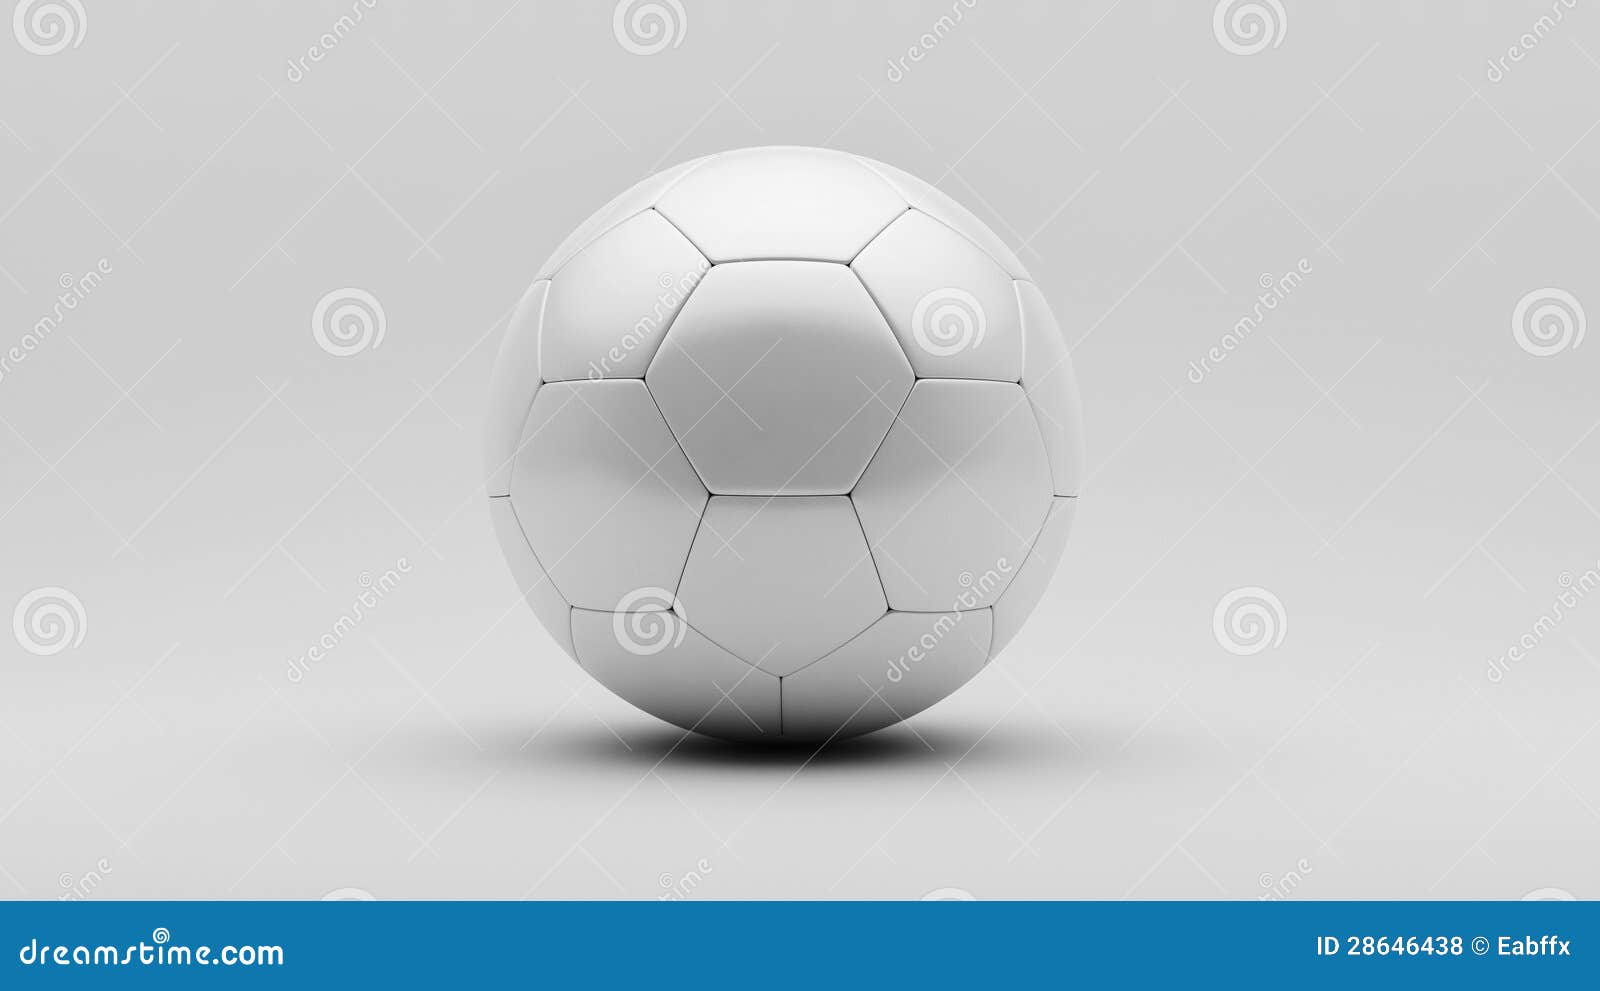 White Soccer Ball stock illustration. Illustration of circle - 28646438